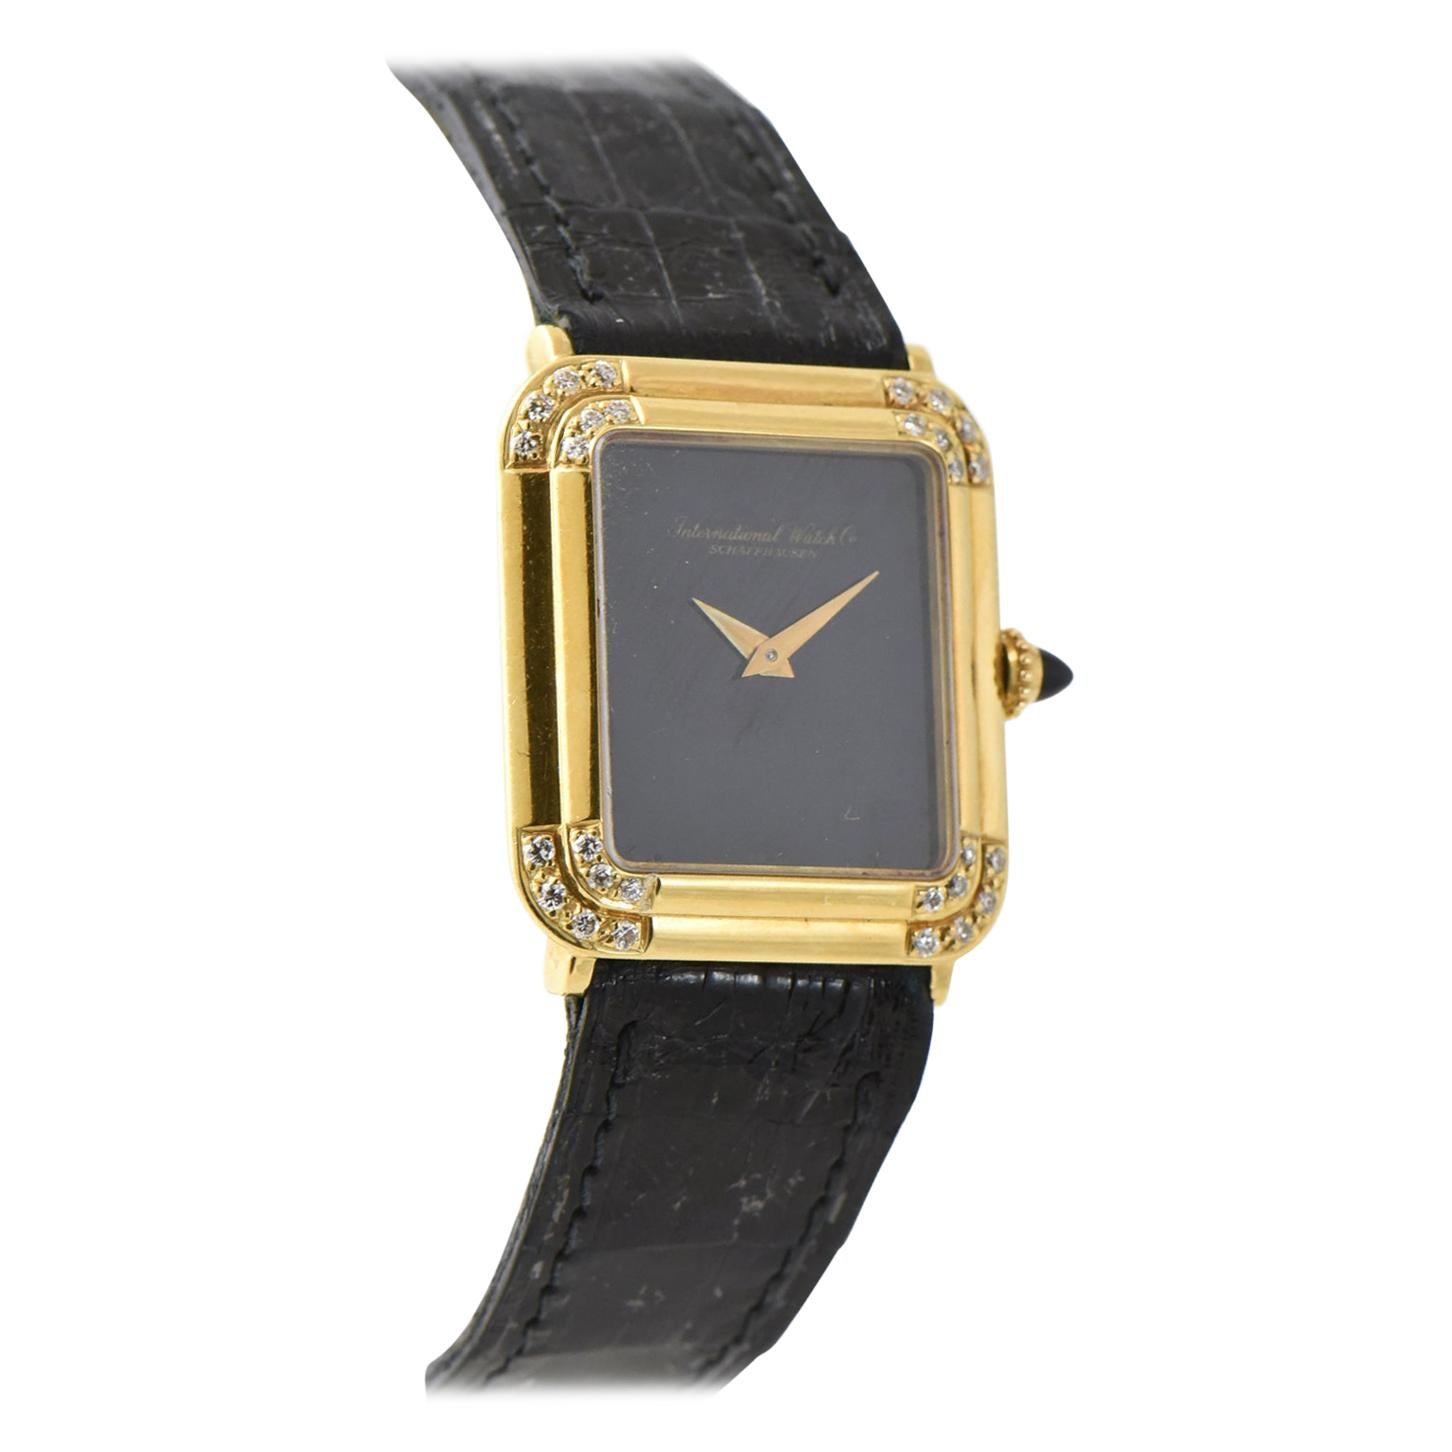 IWC Schaffhausen Pave Diamond Gold Wristwatch on Alligator Band Unisex